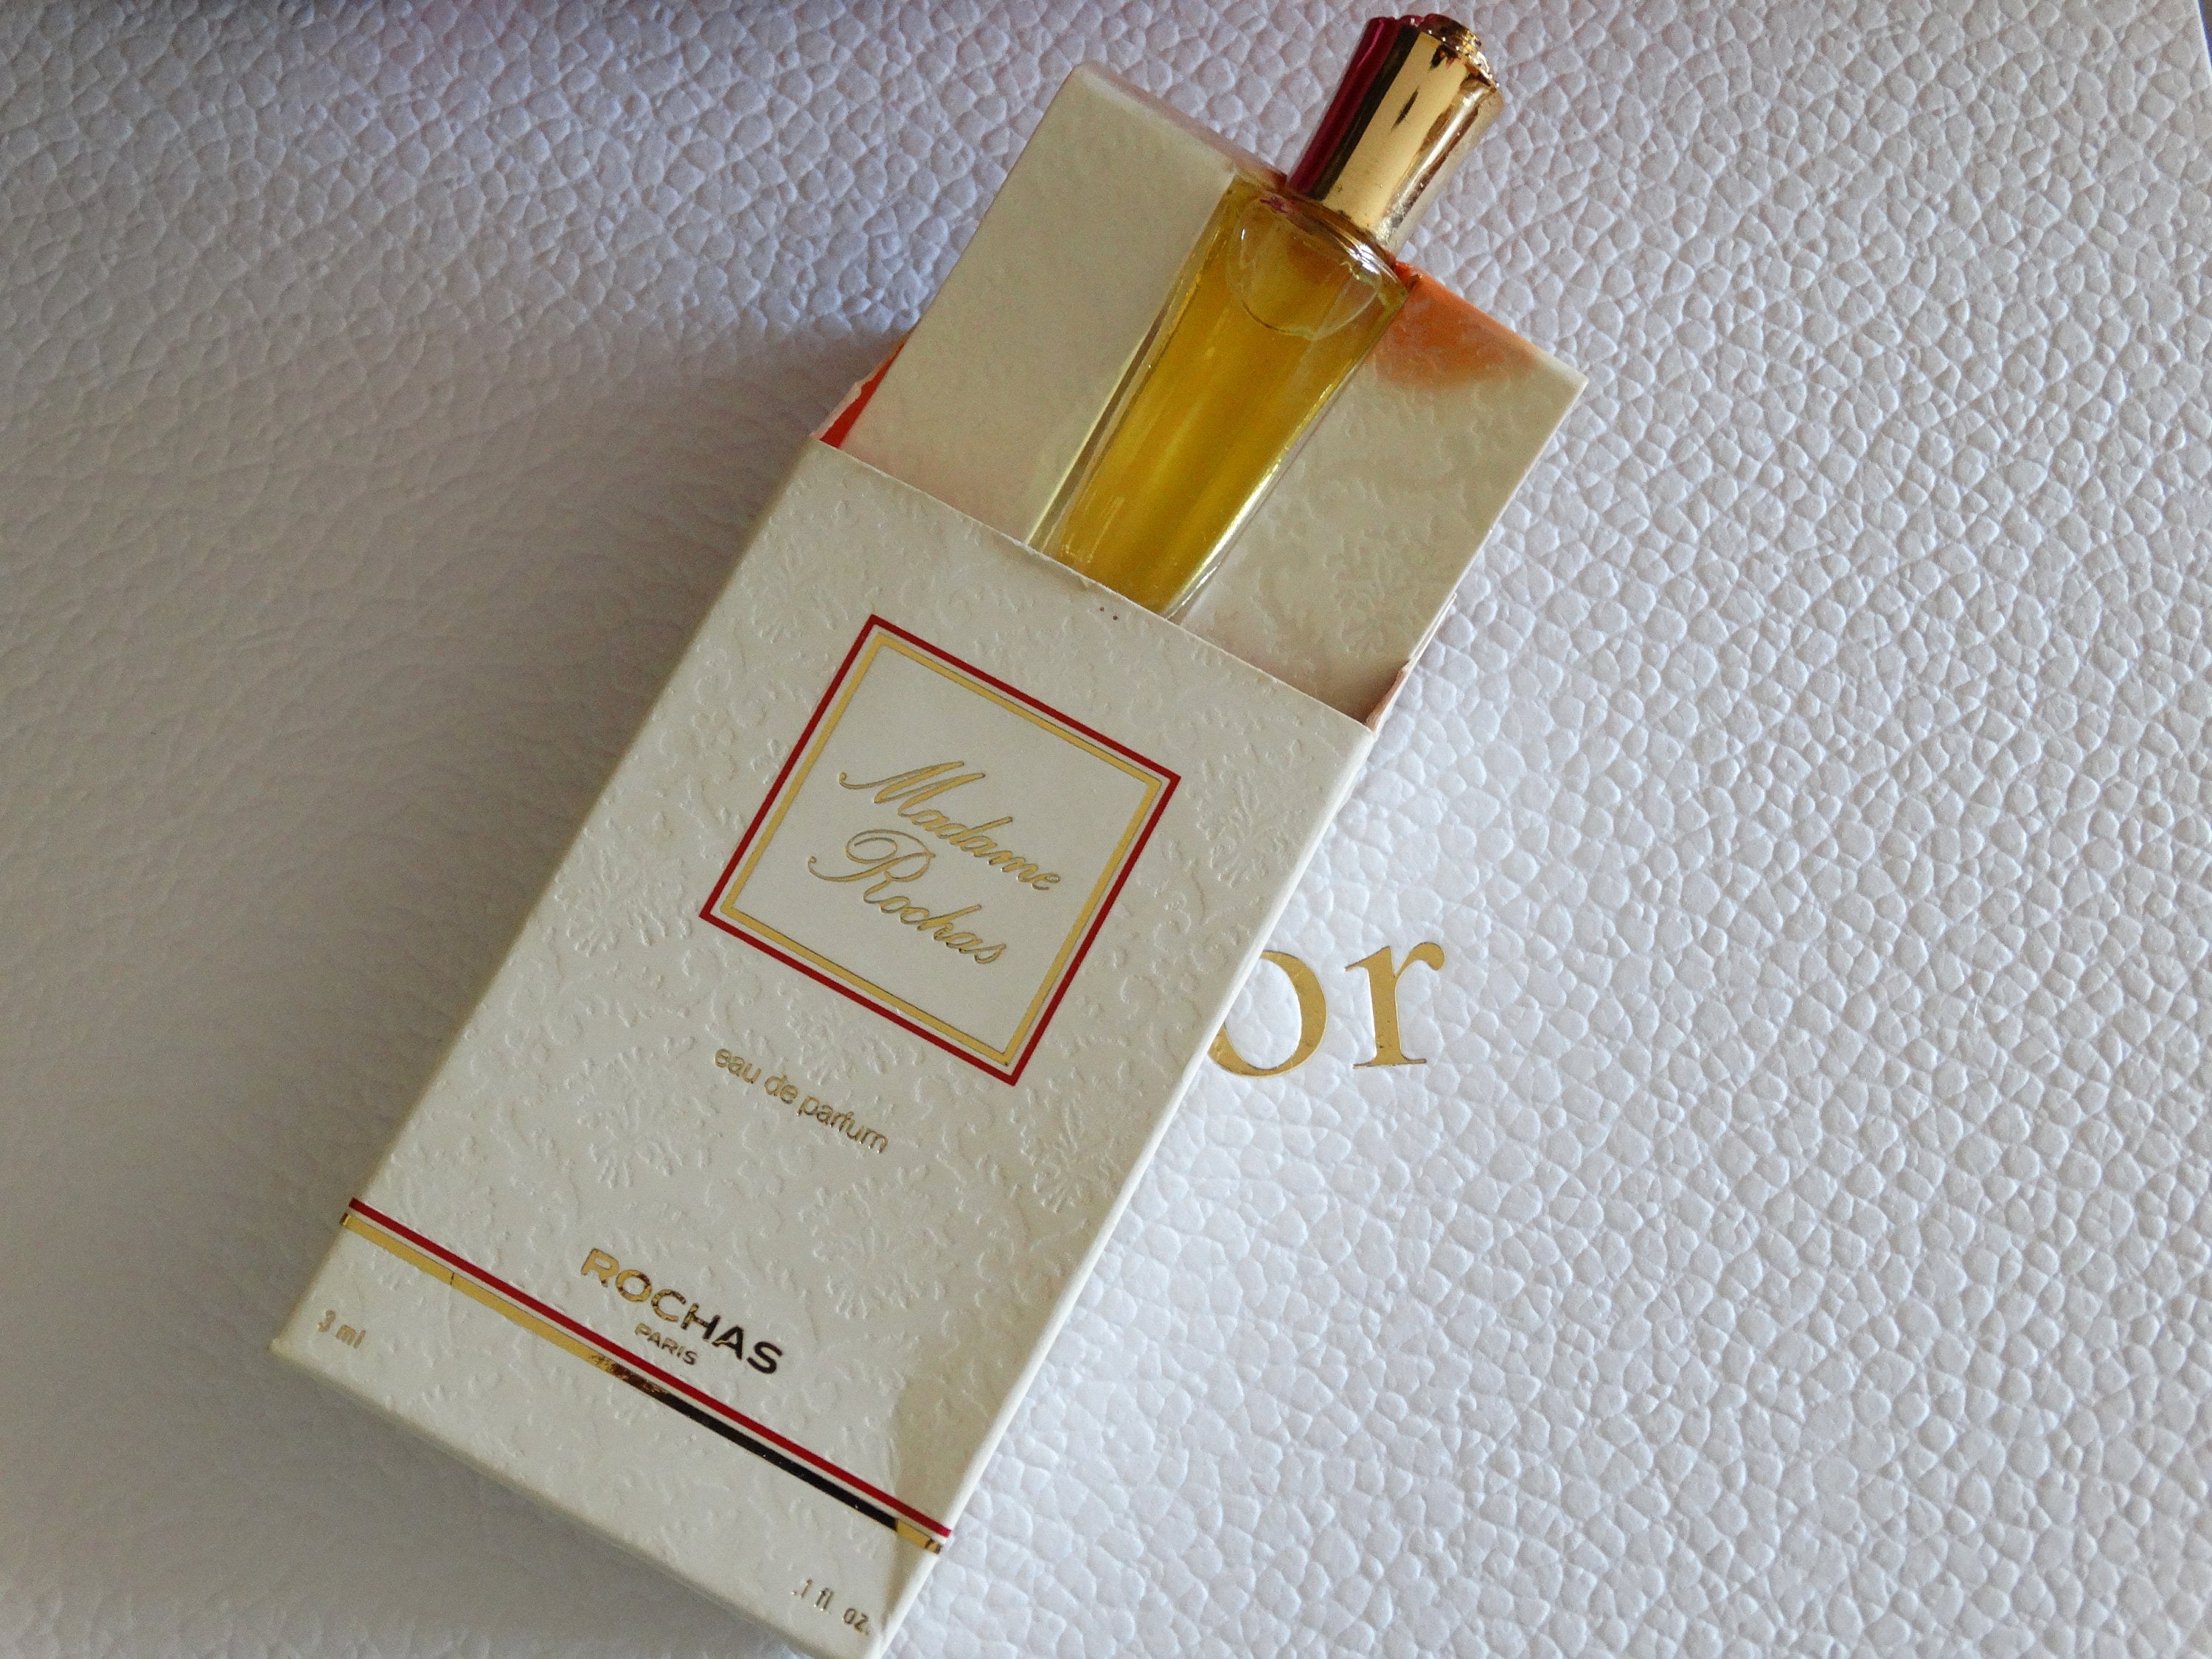 "White Linen" Parfum Miniatur Flakon EdP Eau de Parfum mit Box Estee Lauder 